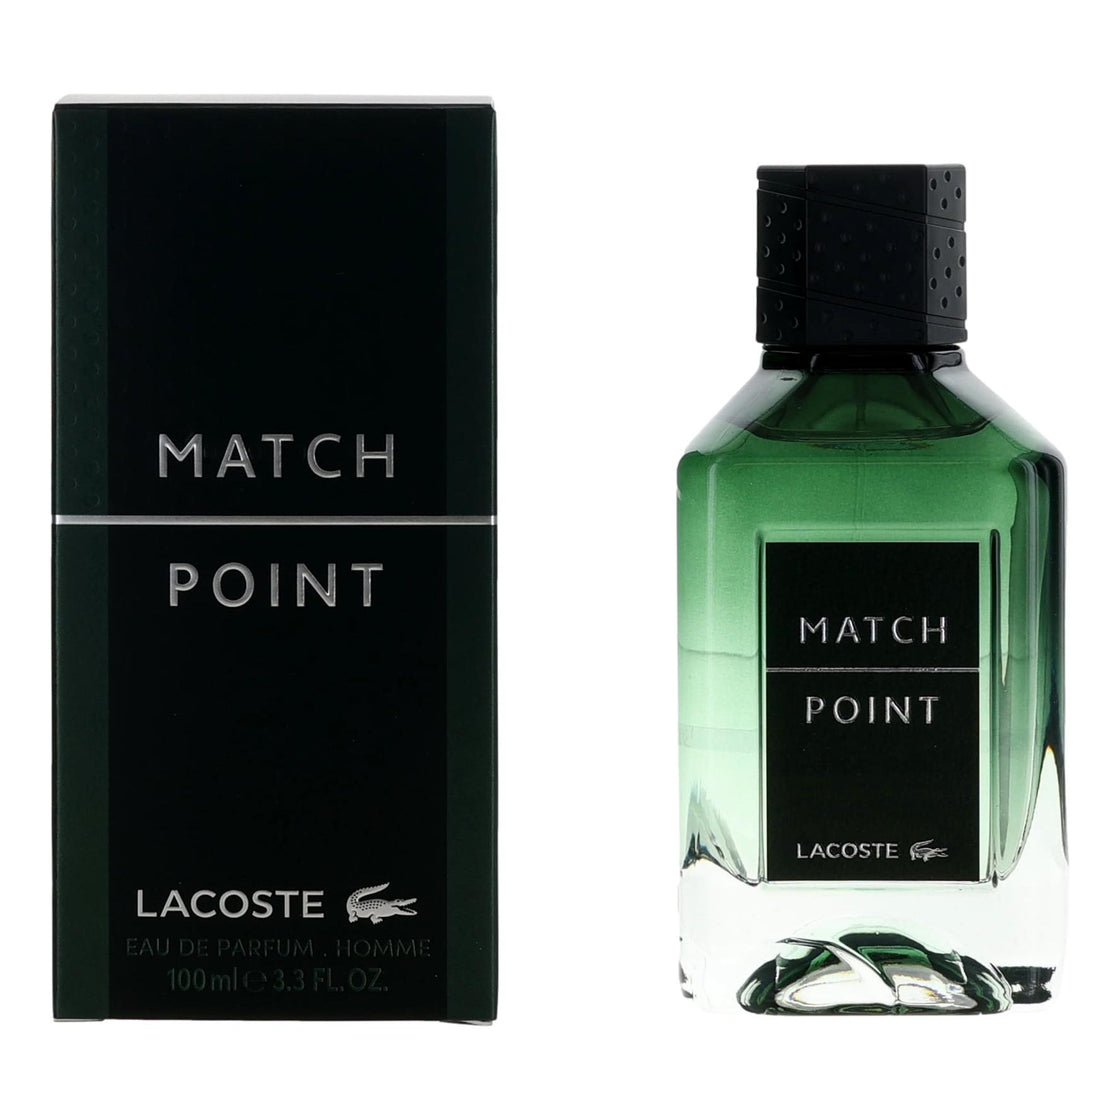 Lacoste Match Point By Lacostse, 3.3 Oz Eau De Parfum Spray For Men